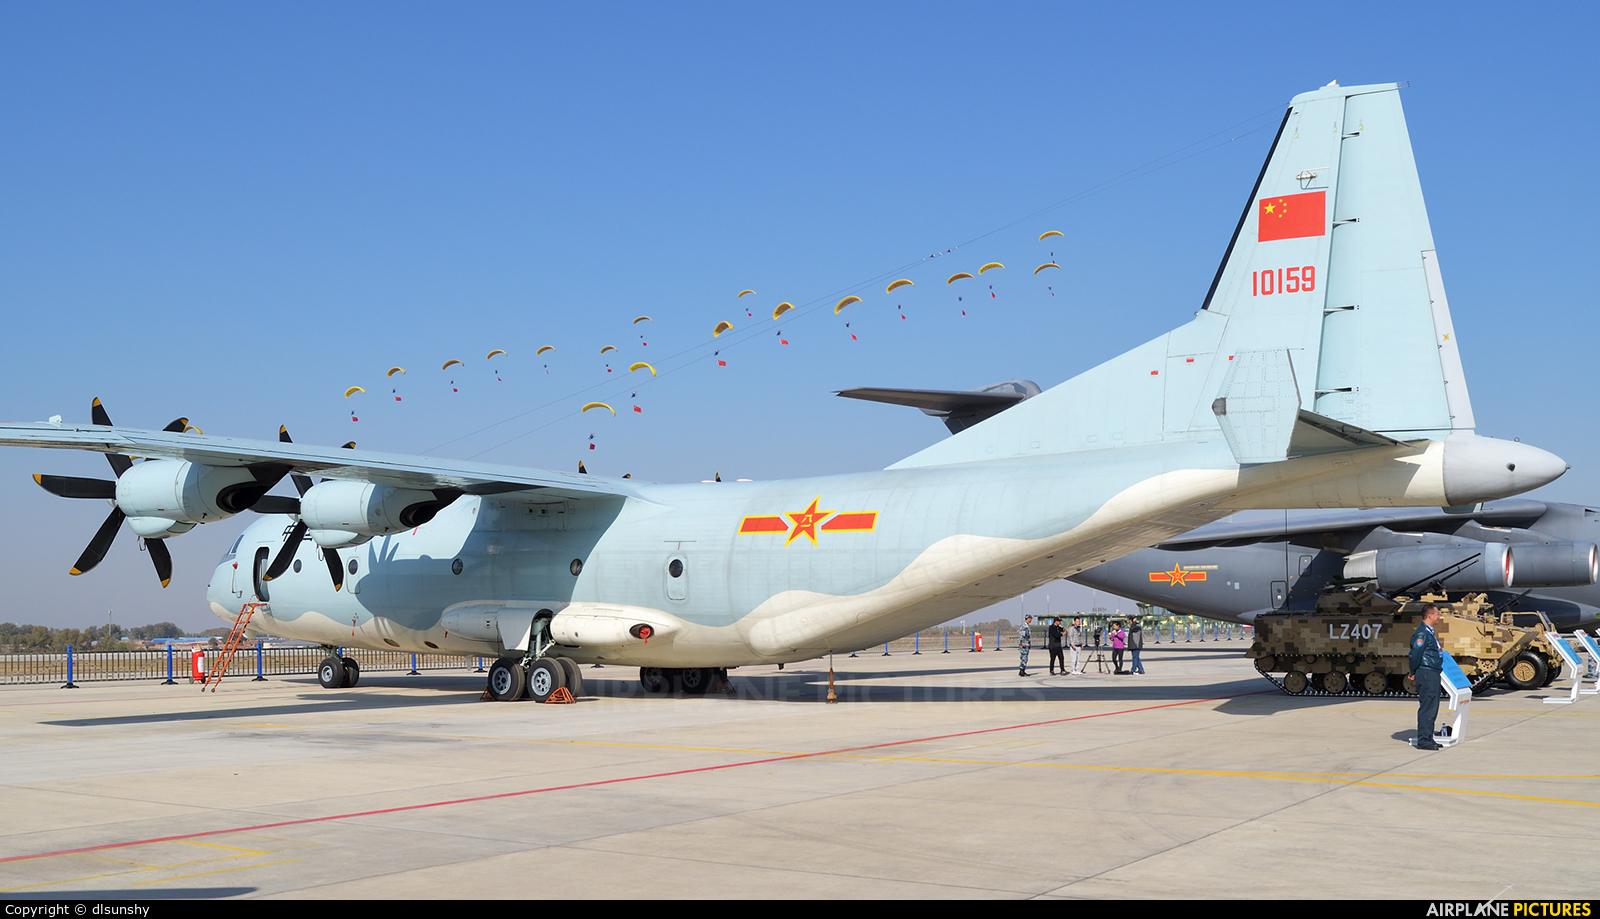 China - Air Force 10159 aircraft at Changchun Dafangshen